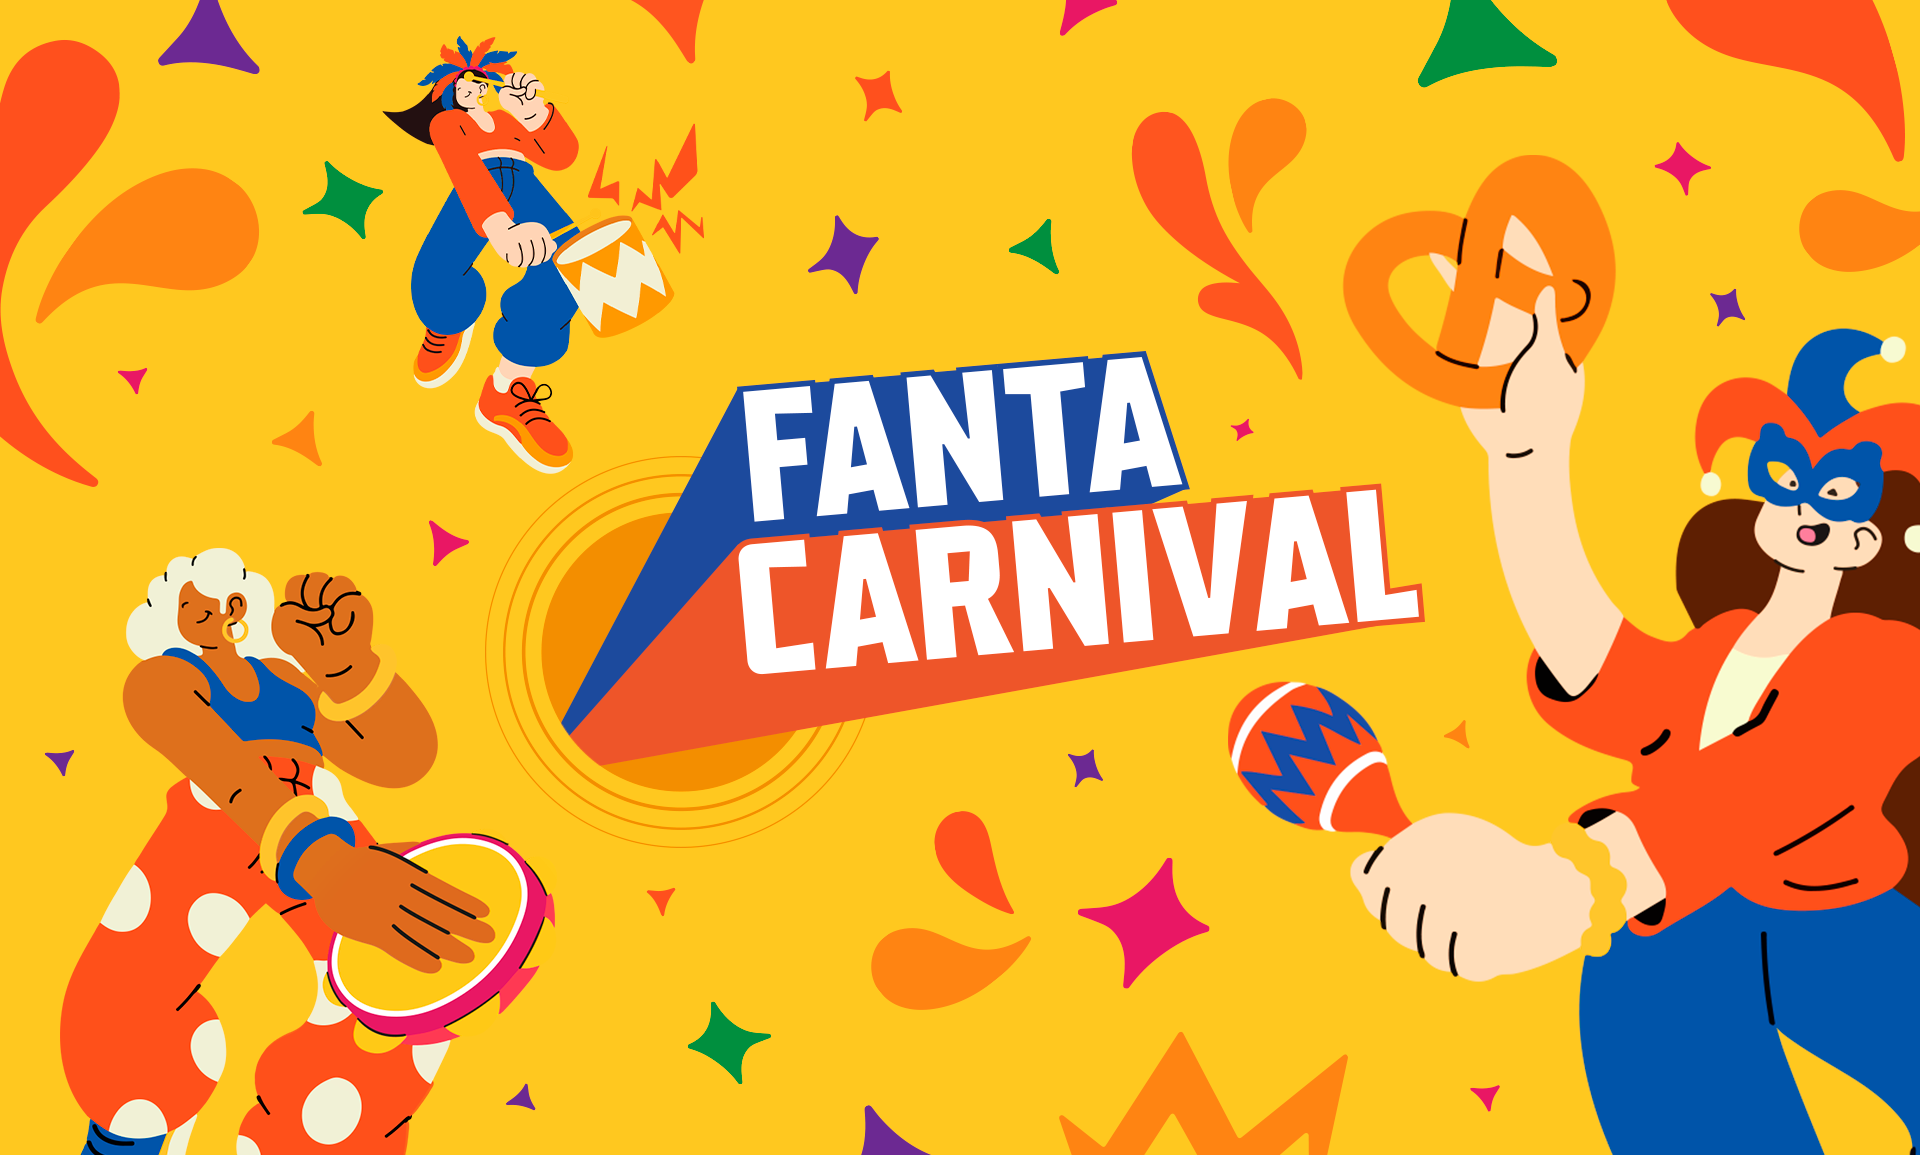 Fanta Carnival